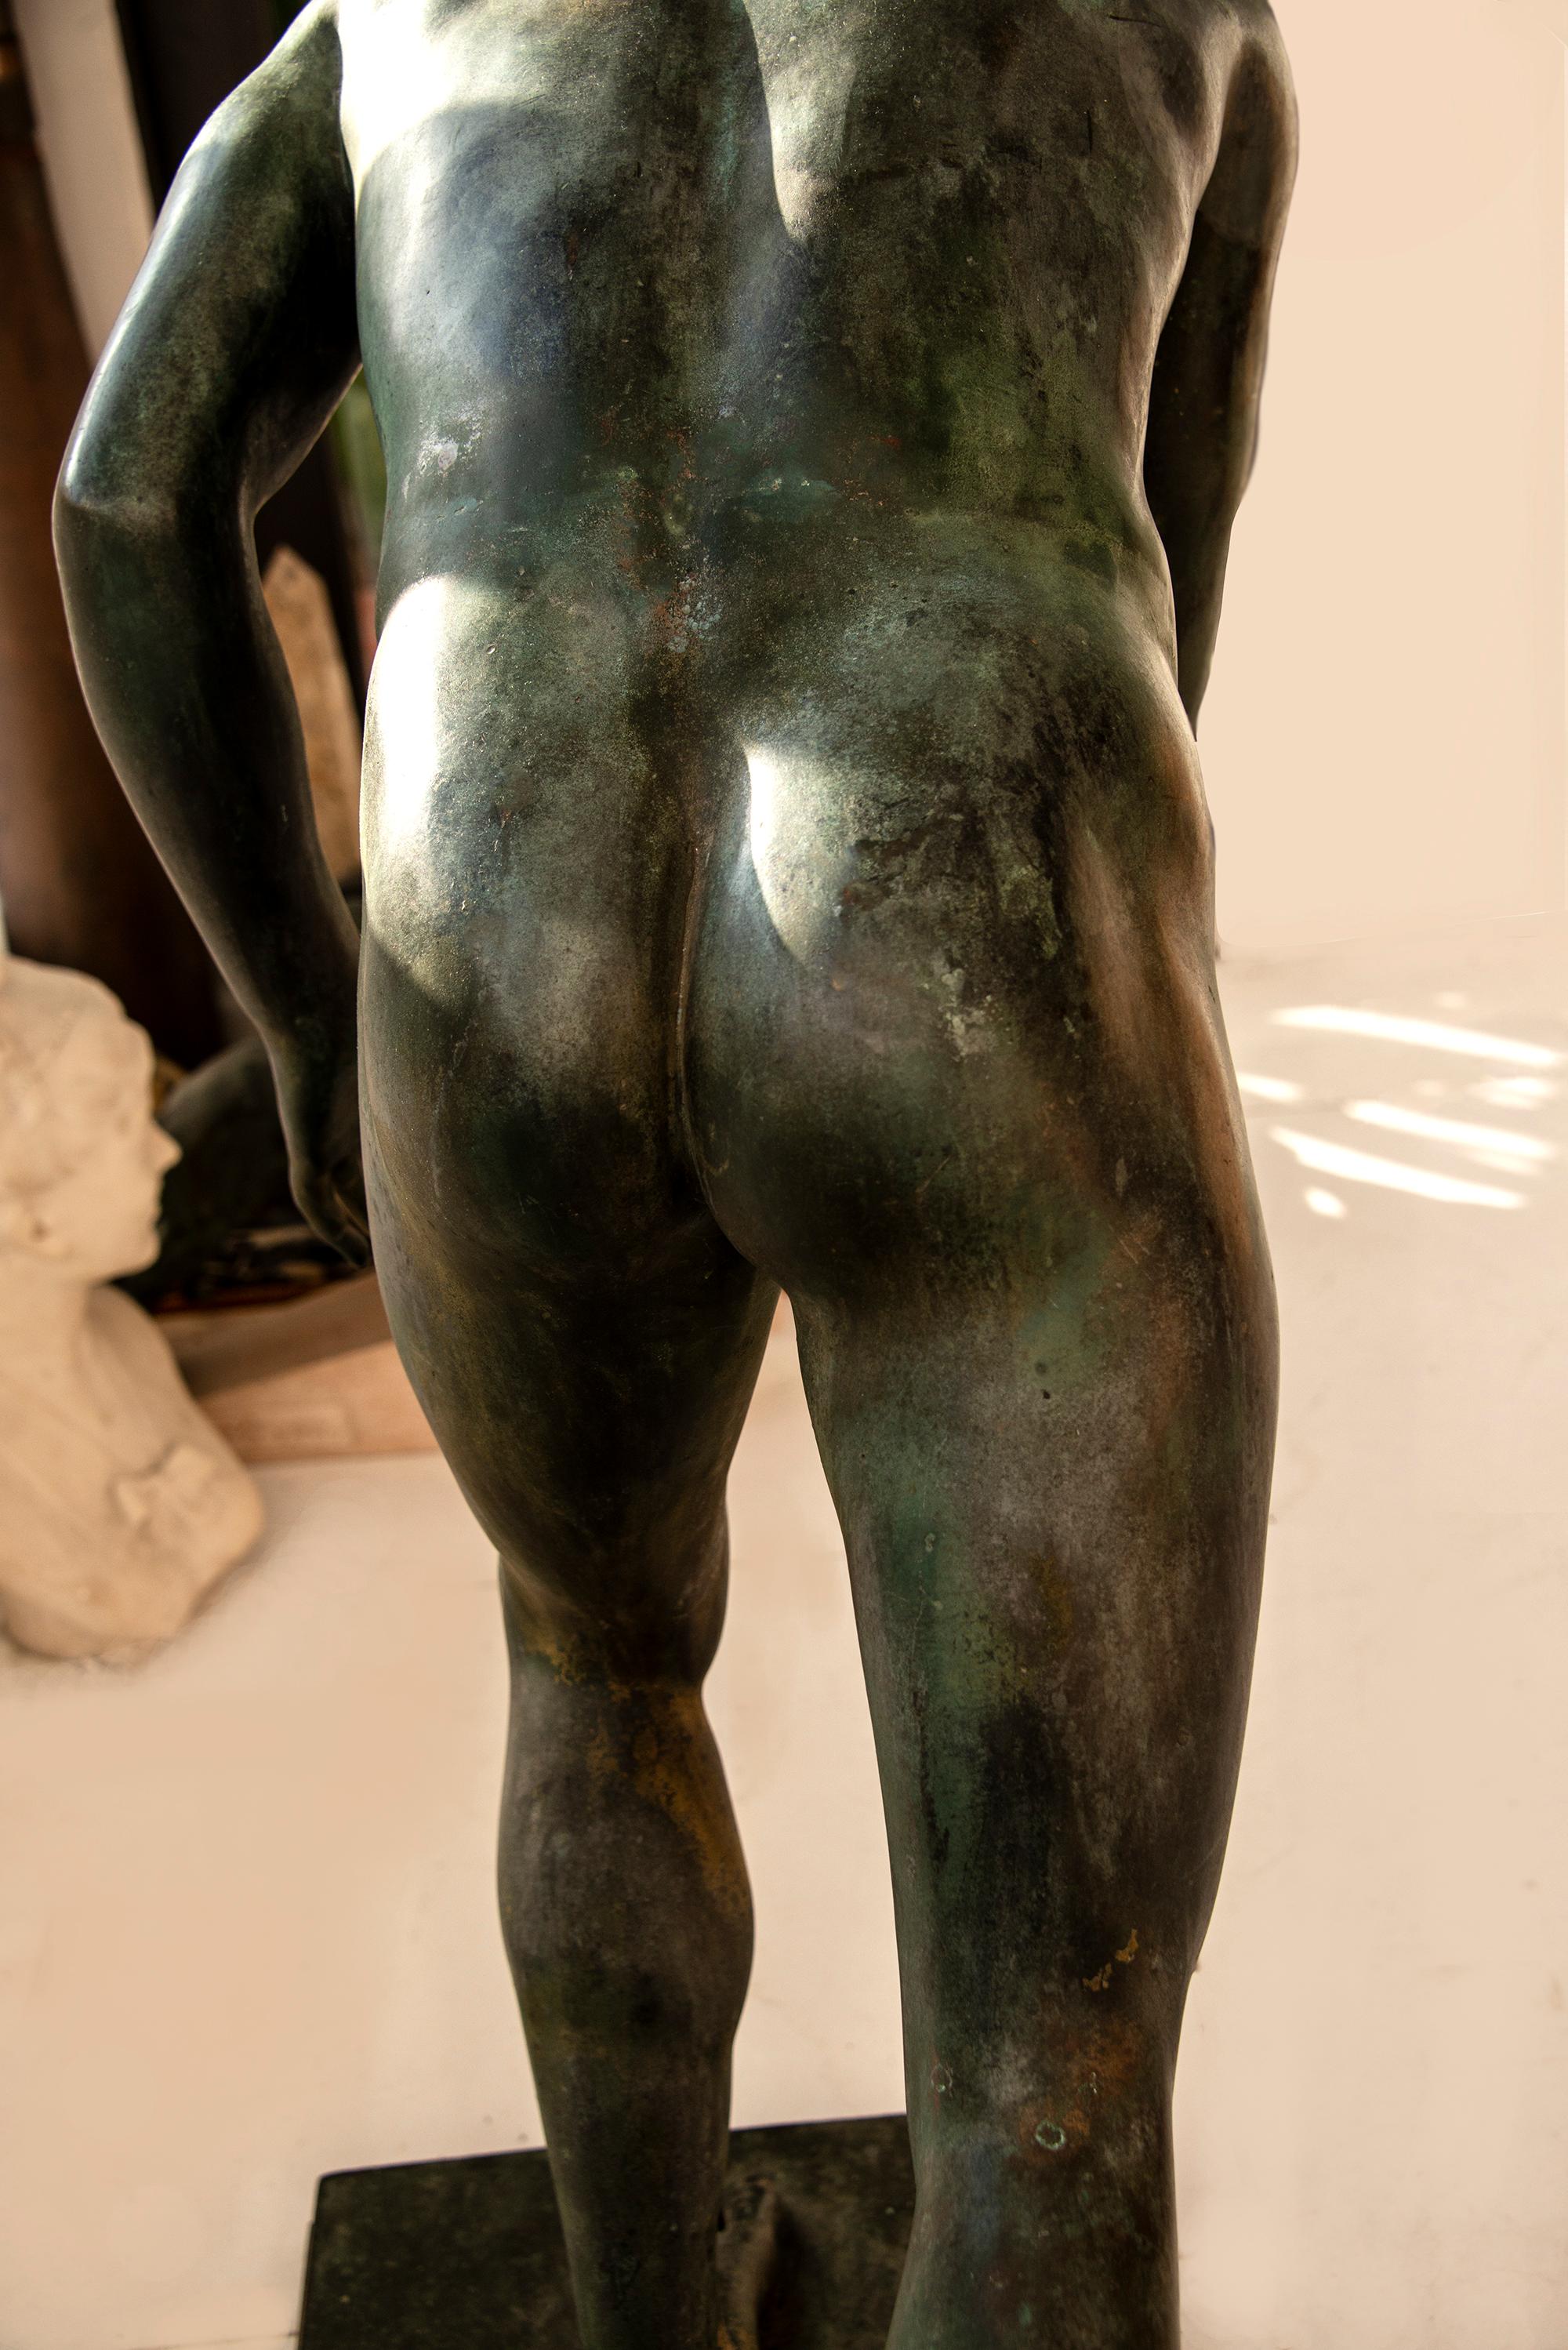 Magnifique bronze d'homme nu aux proportions généreuses et aux traits raffinés de style classique romain, d'après l'Antiquité.  Elle est plus belle avec un éclairage clé qui accentue la forme et la silhouette du personnage.    La statue pèse entre